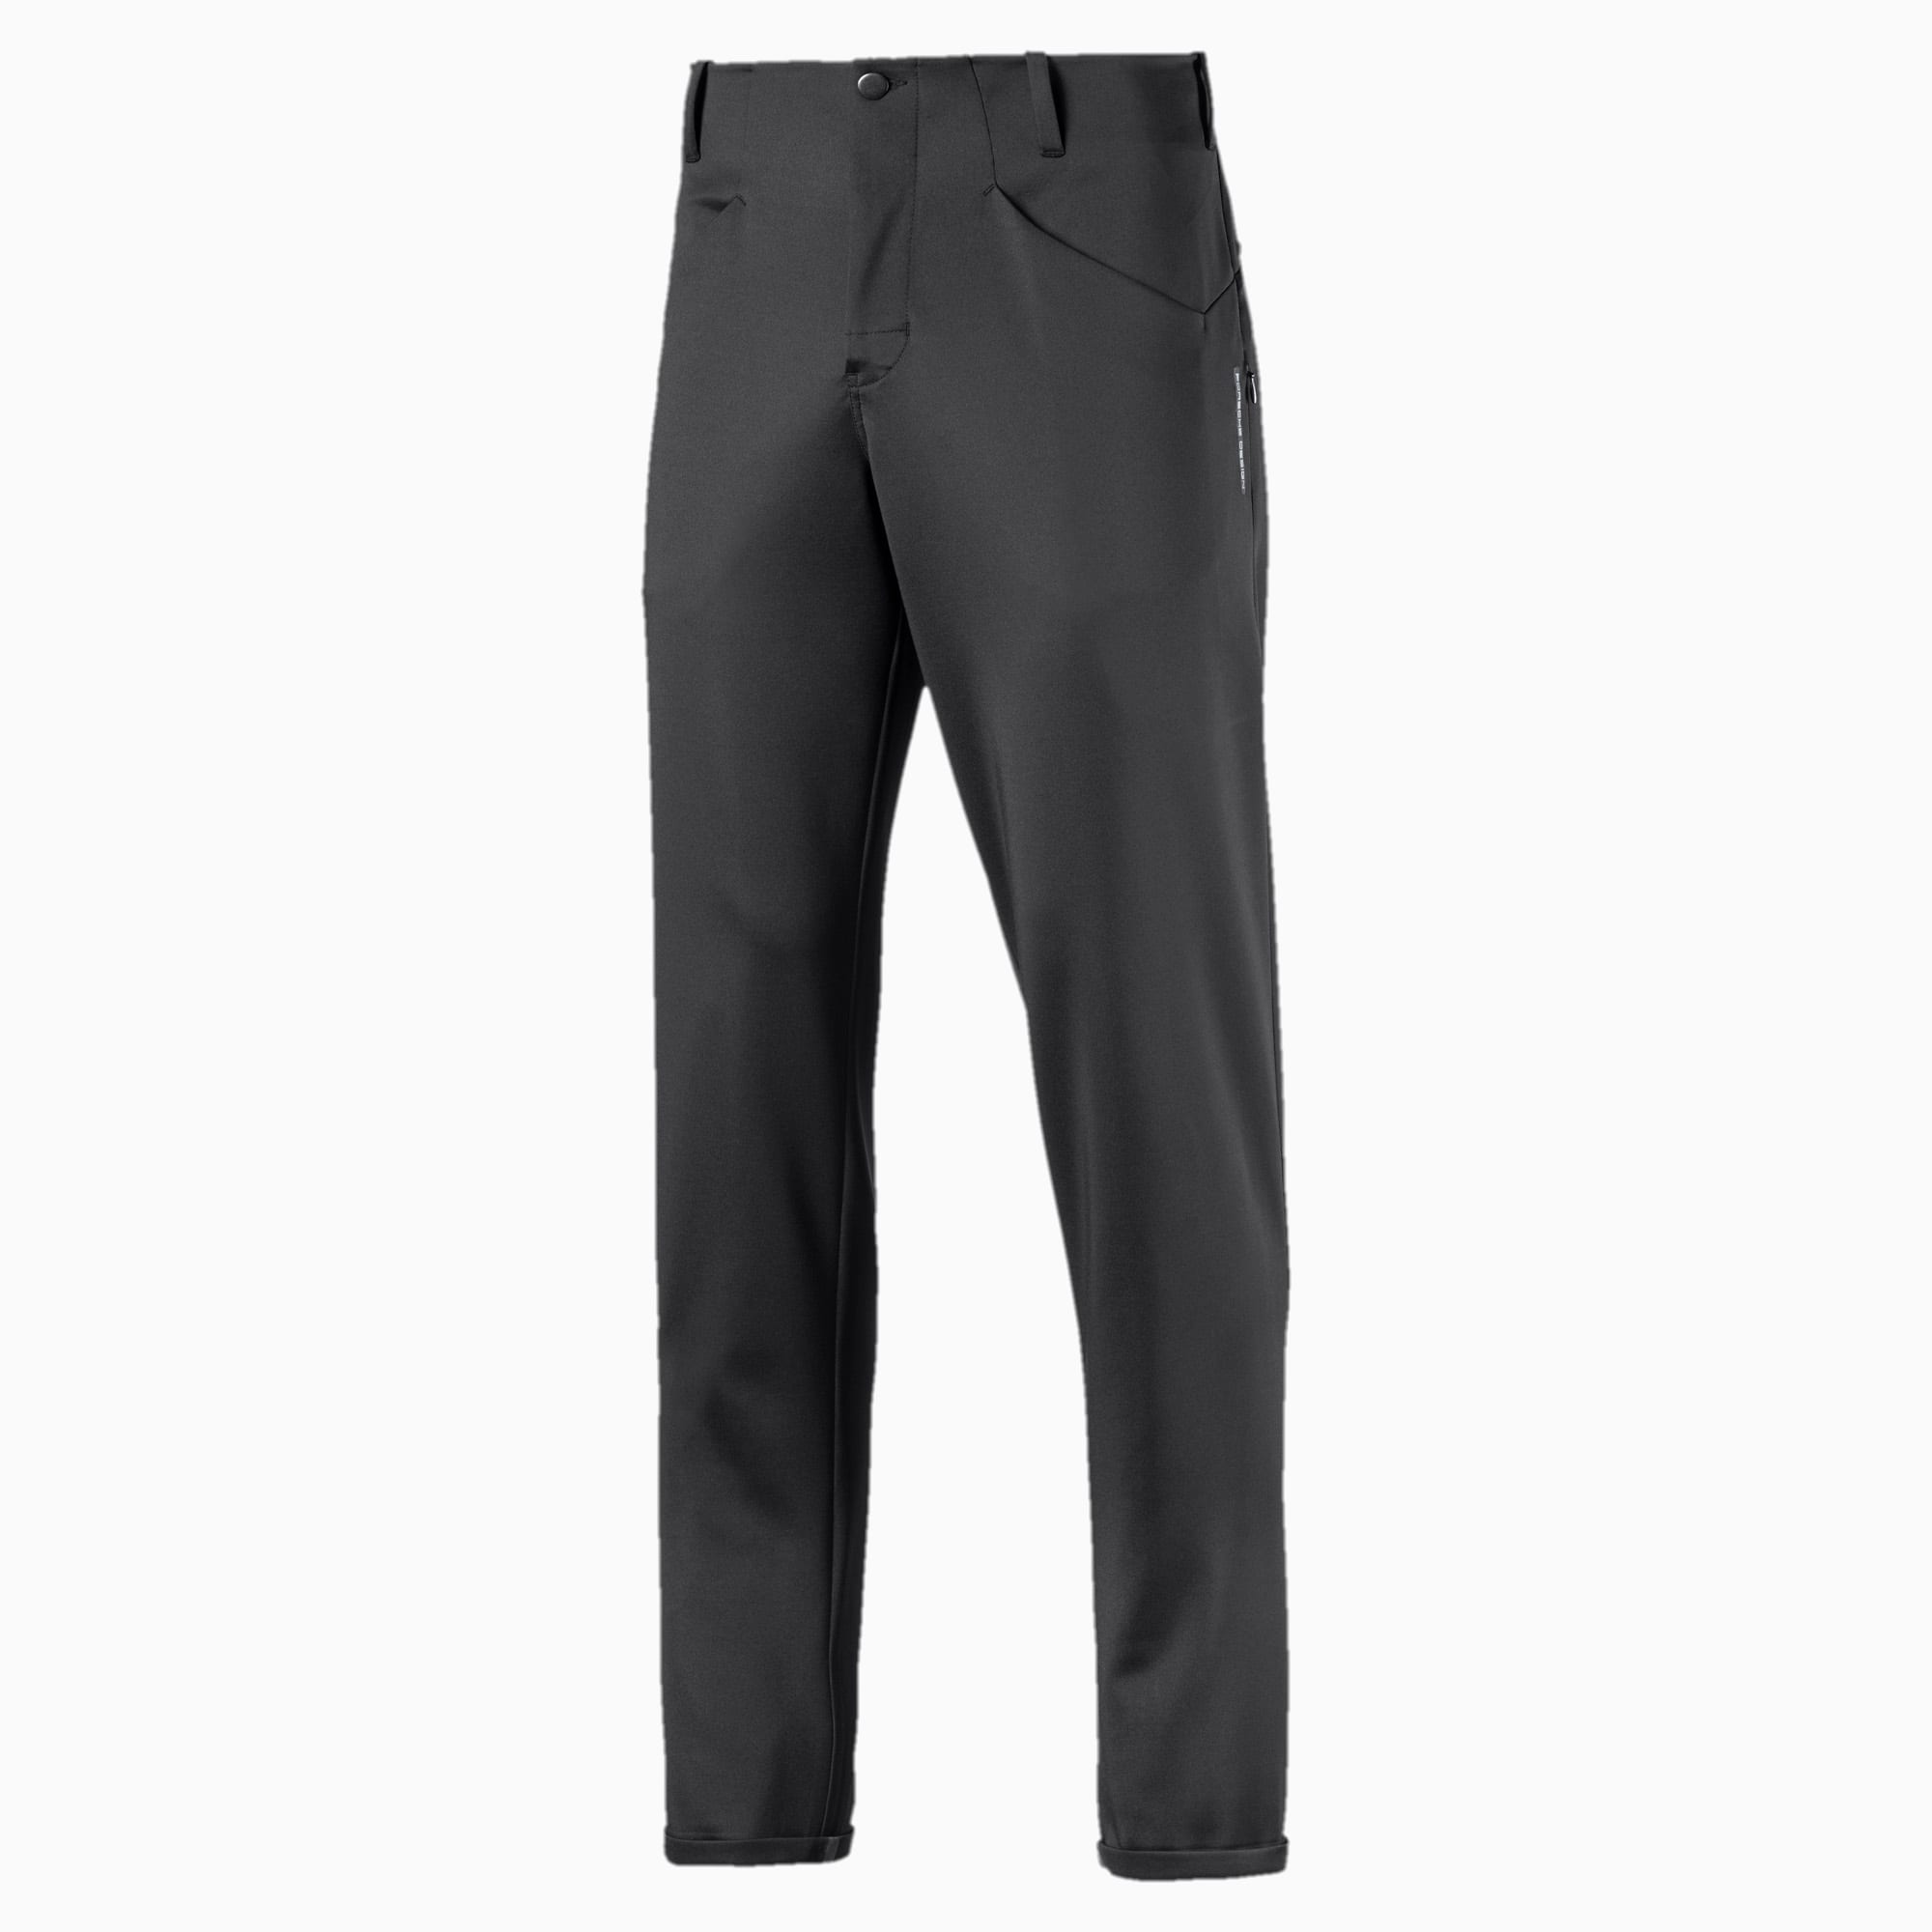 Porsche Design Men's Knitted Pocket Pants, Jet Black, large-SEA